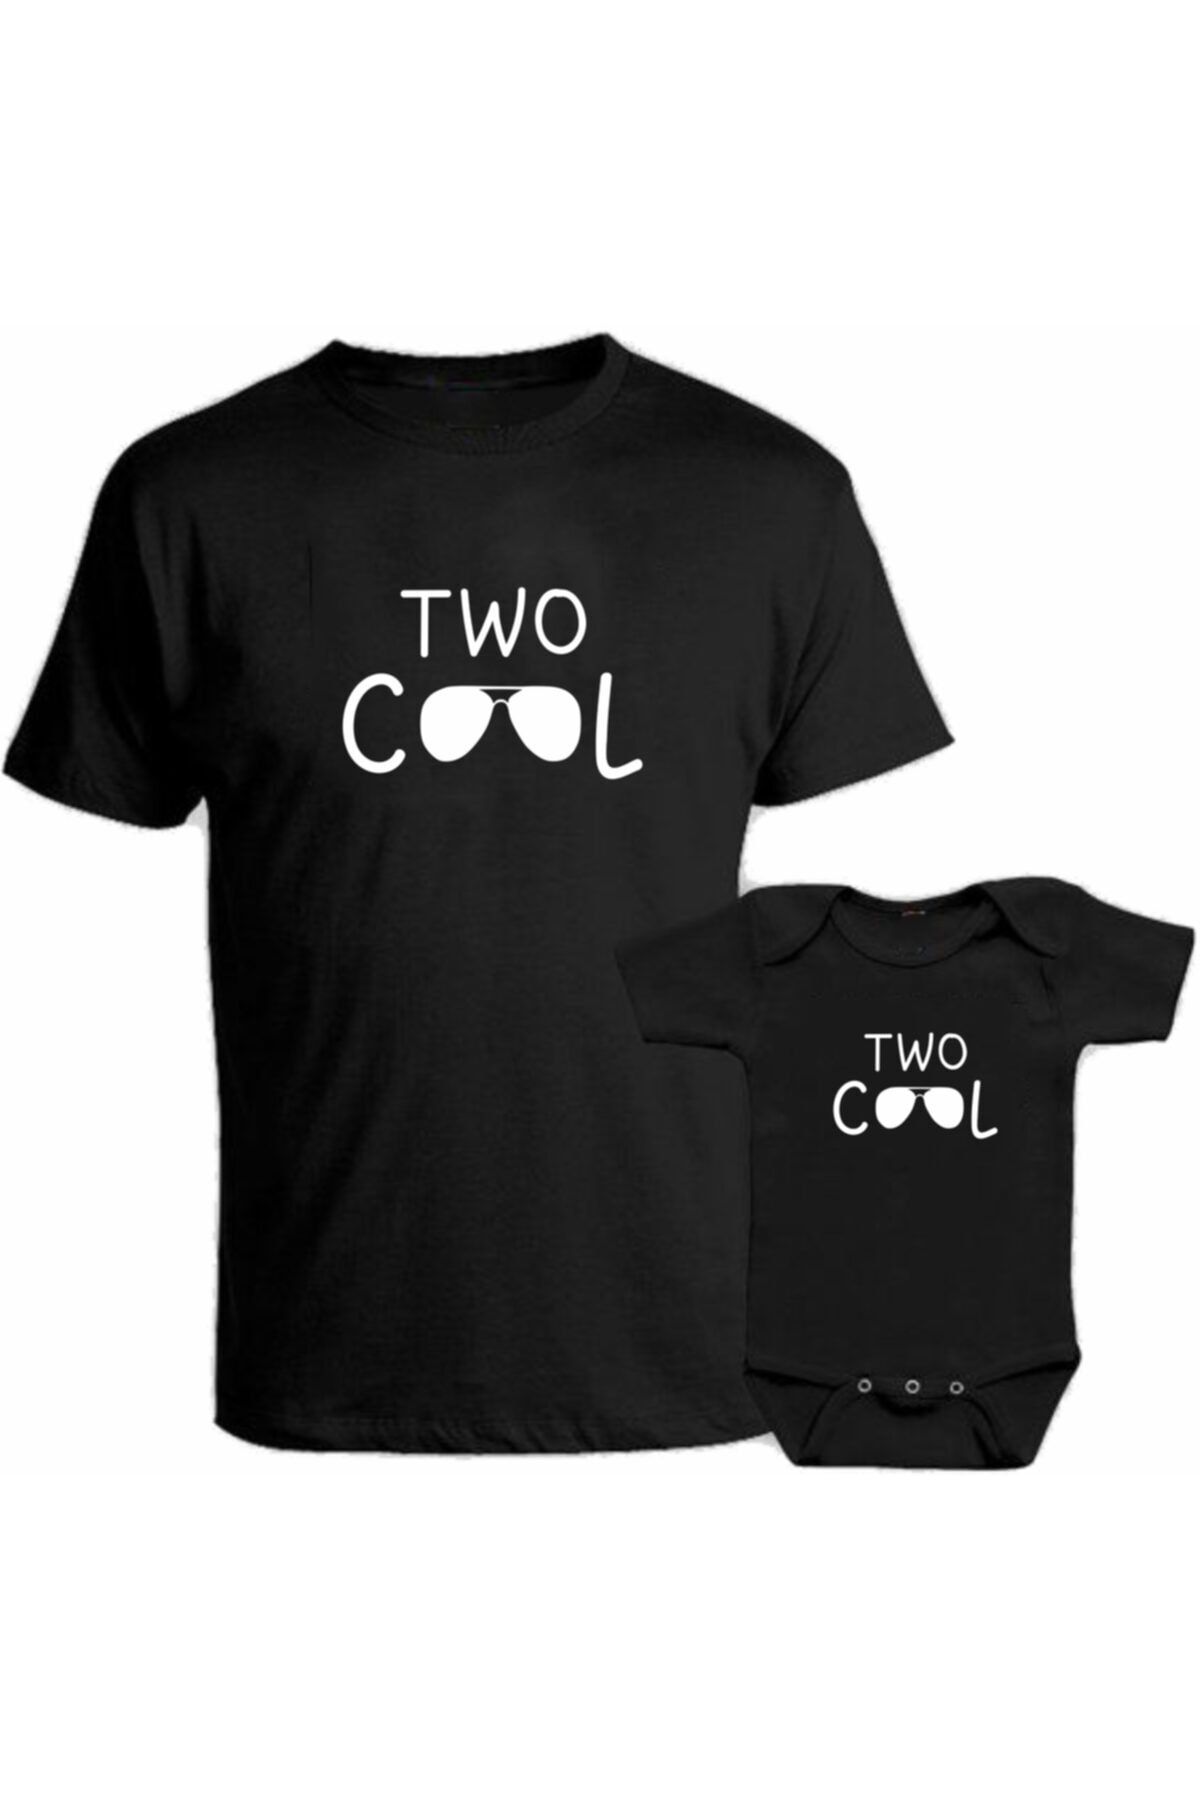 venüsdijital Two Cool Baba Oğul Kombin Siyah Tişört Zıbın (baba Oğul Kombin Yapılabilir Fiyatlar Ayrı Ayrıdır)